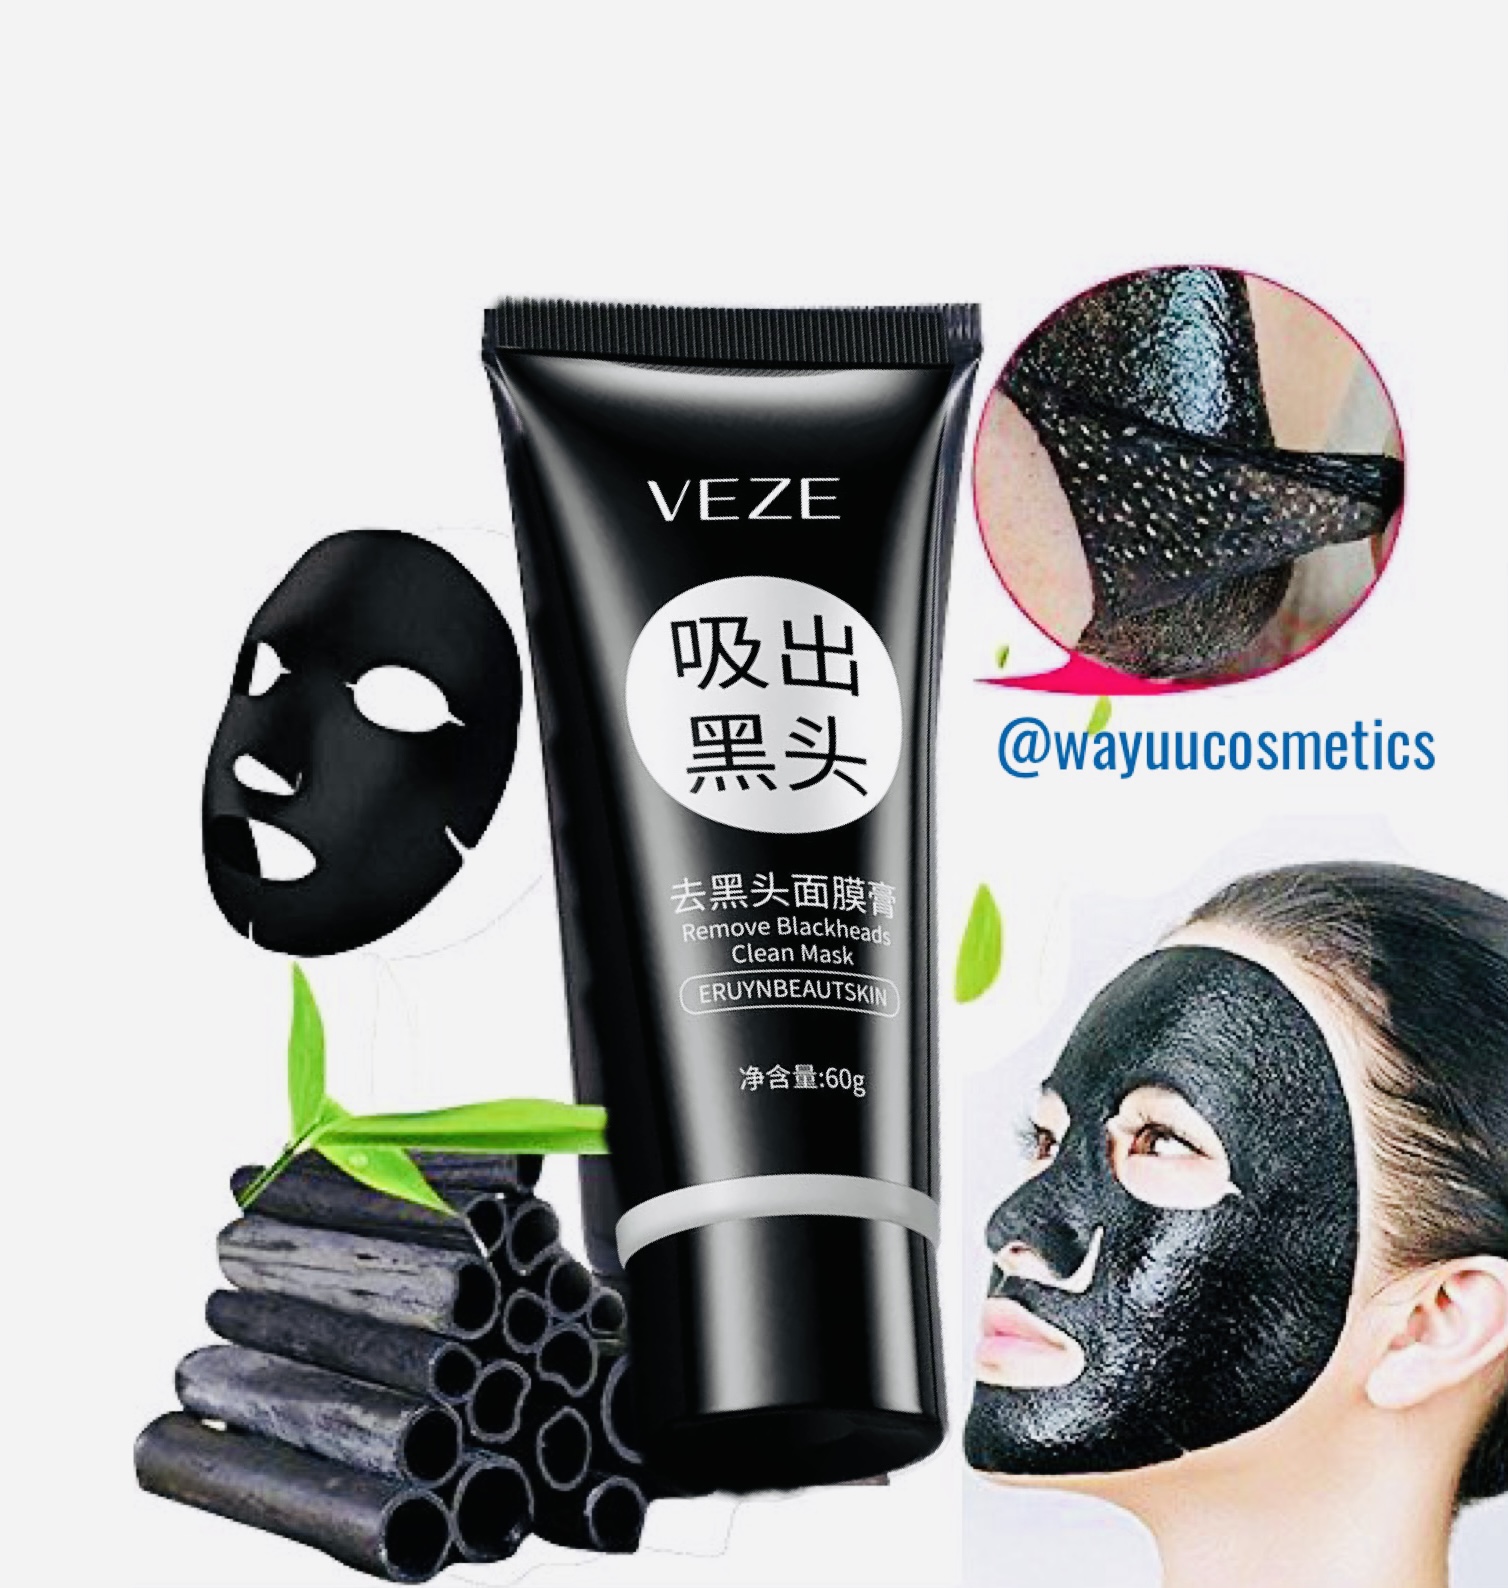 Mascarilla limpiadora para puntos negros VEZE – Wayuu Cosmetics